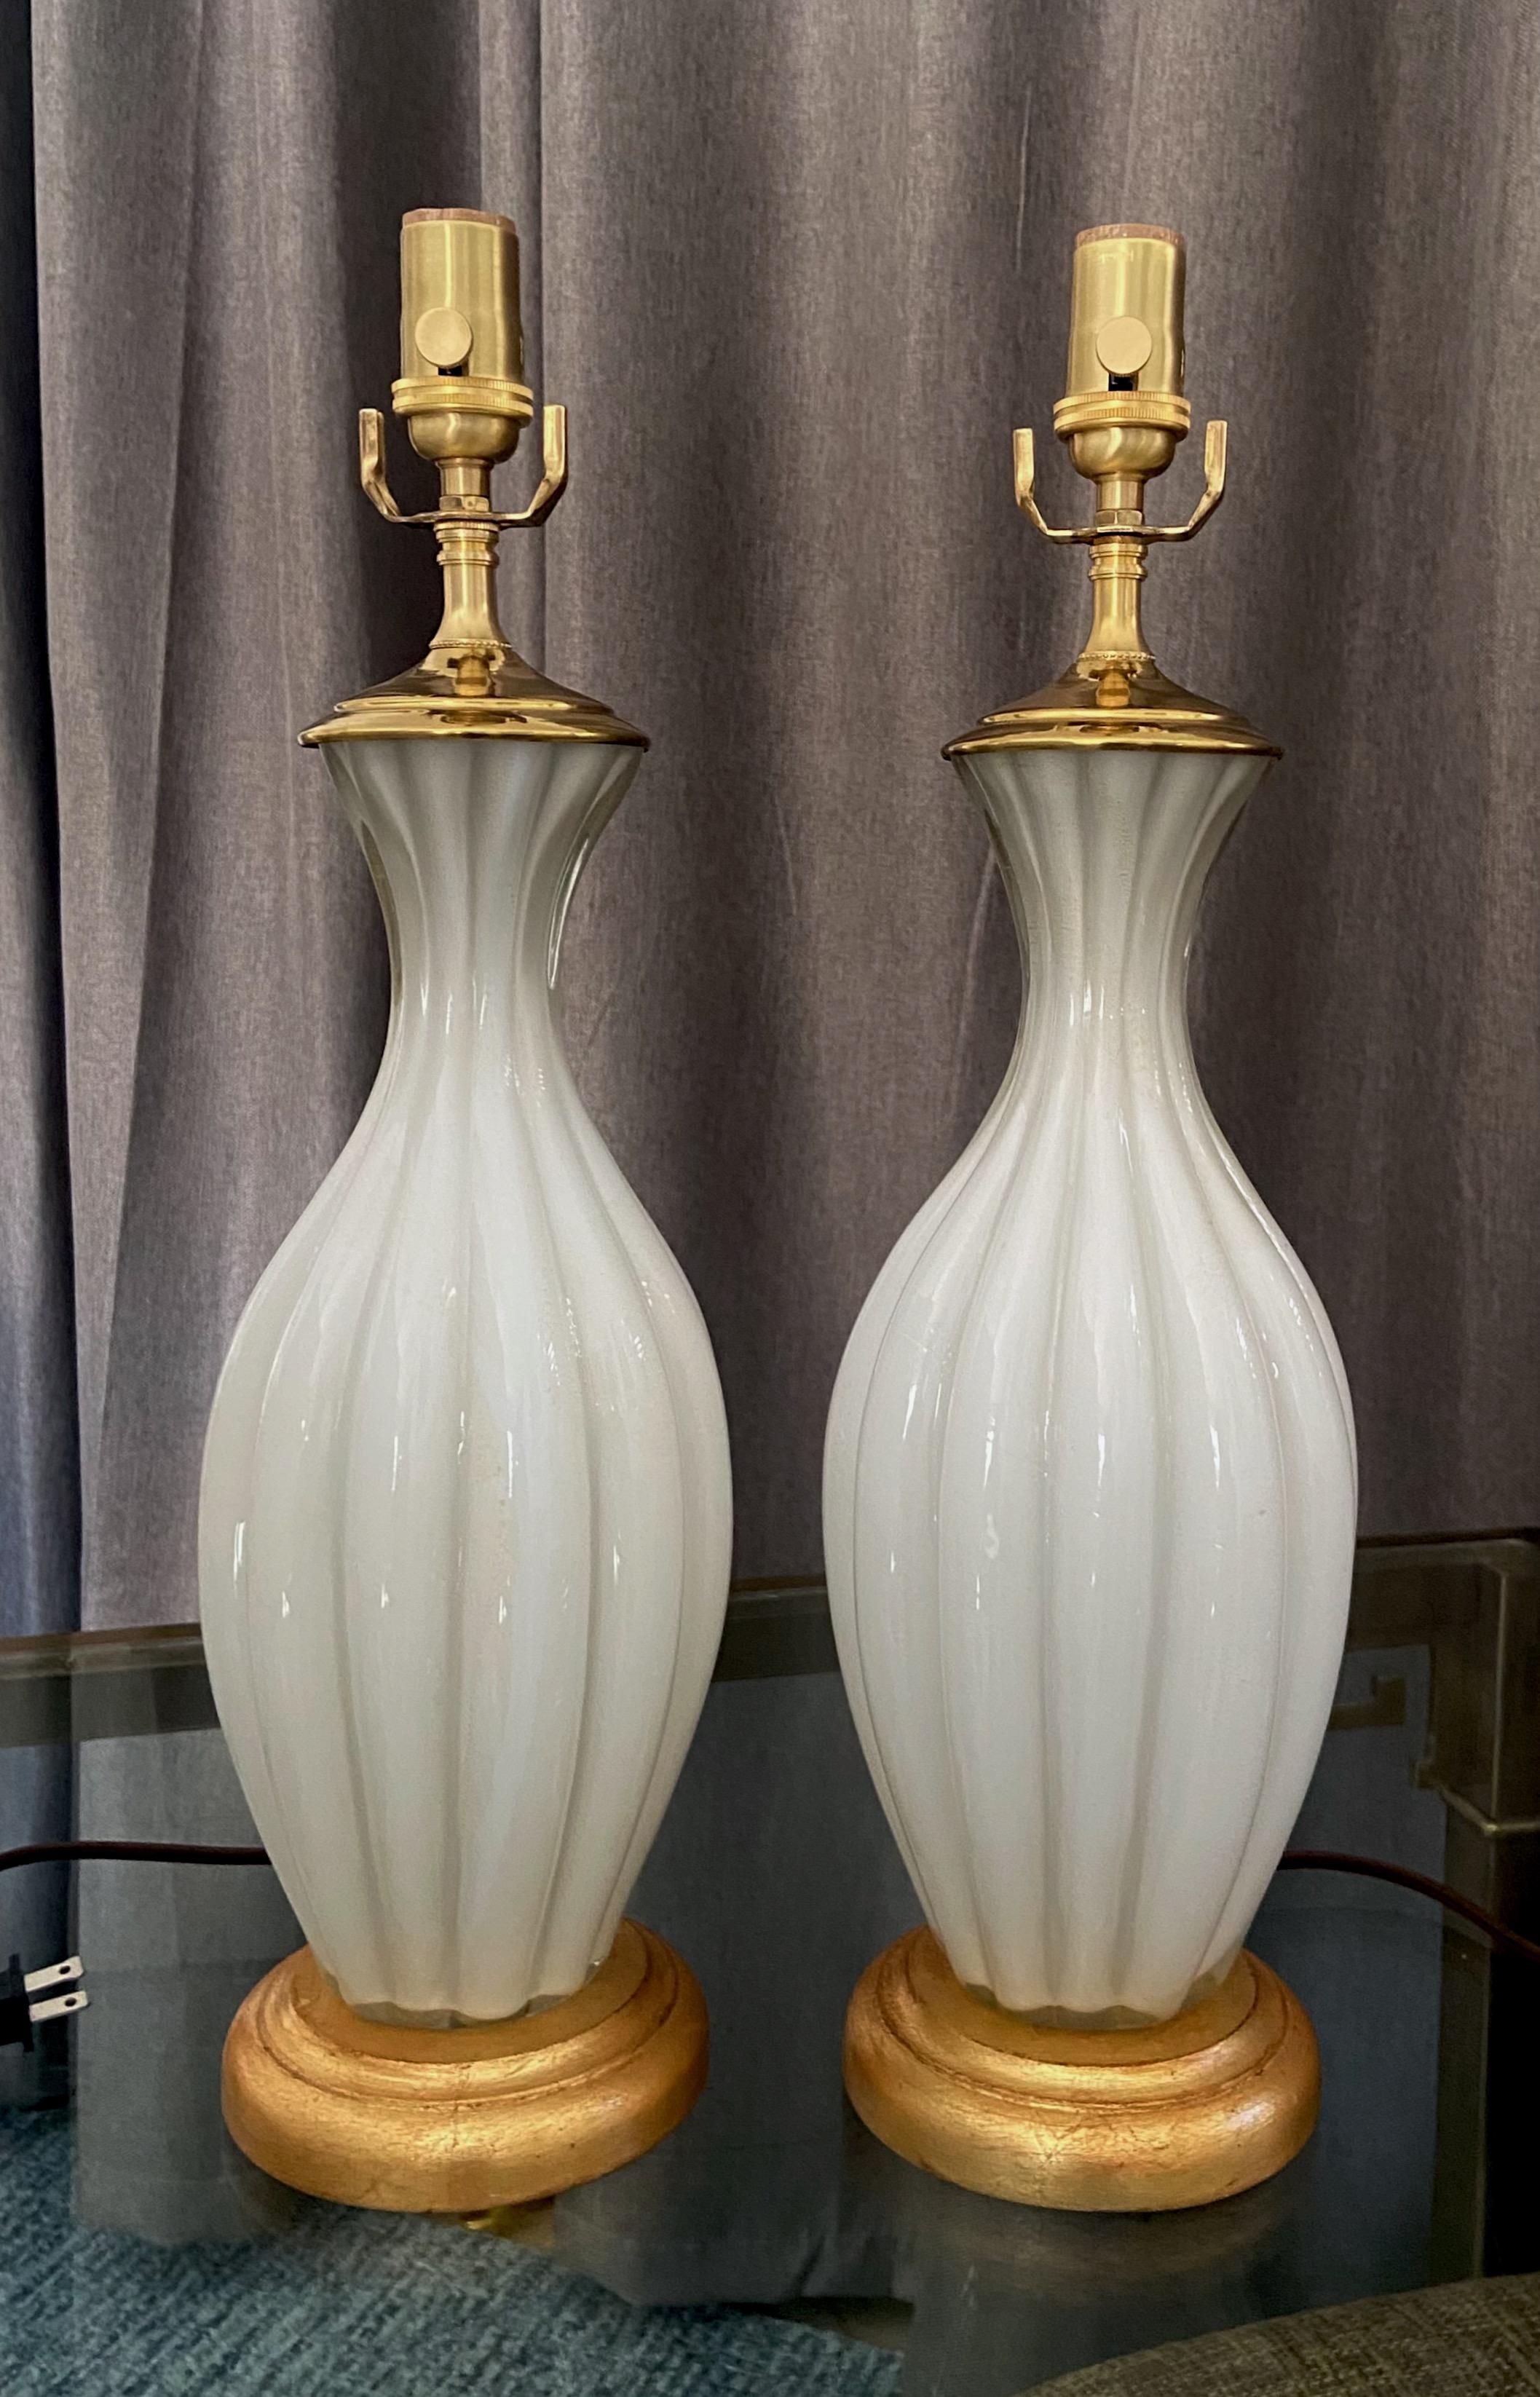 Paire de lampes italiennes de Murano en verre blanc, montées sur des bases en bois doré. Le boîtier soufflé à la main présente de subtiles inclusions d'or en paillettes. Nouvellement câblé pour les États-Unis avec de nouveaux équipements. 
Prises à